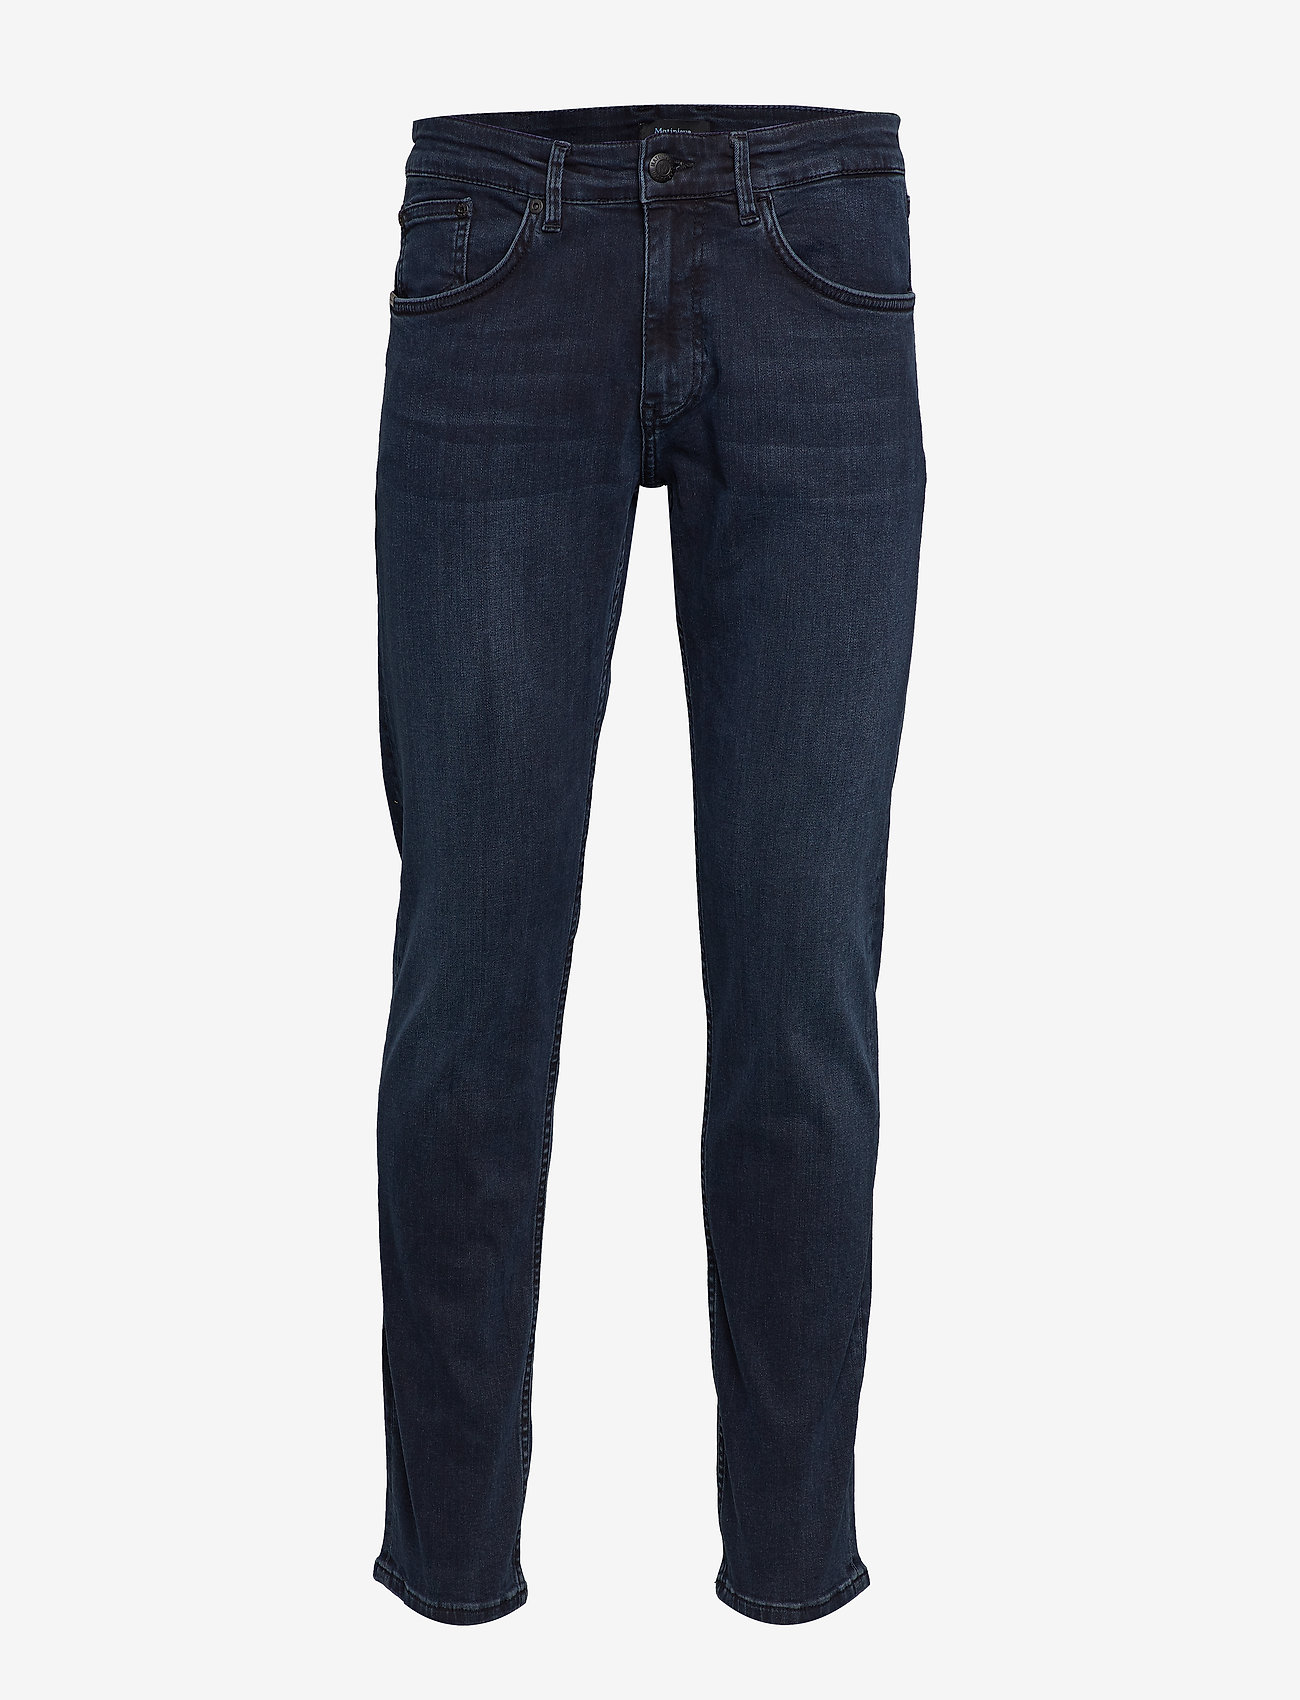 Matinique - Priston - slim fit jeans - dark denim - 0